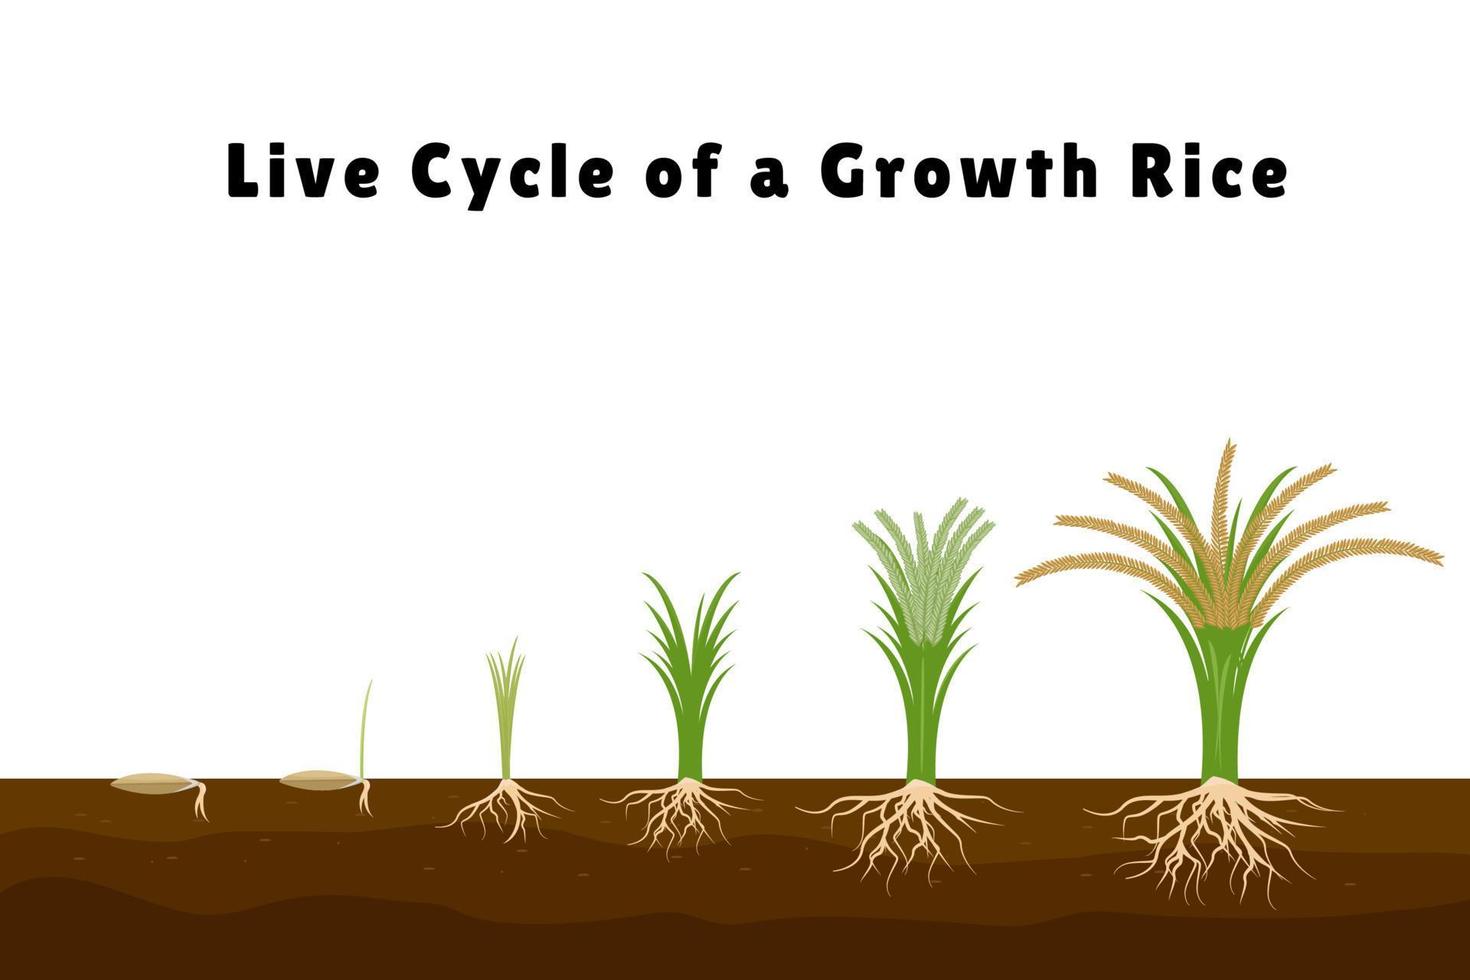 arroz produtos plano composição com conjunto do imagens mostrando plantar crescimento a partir de brotar para alta arbusto vetor ilustração